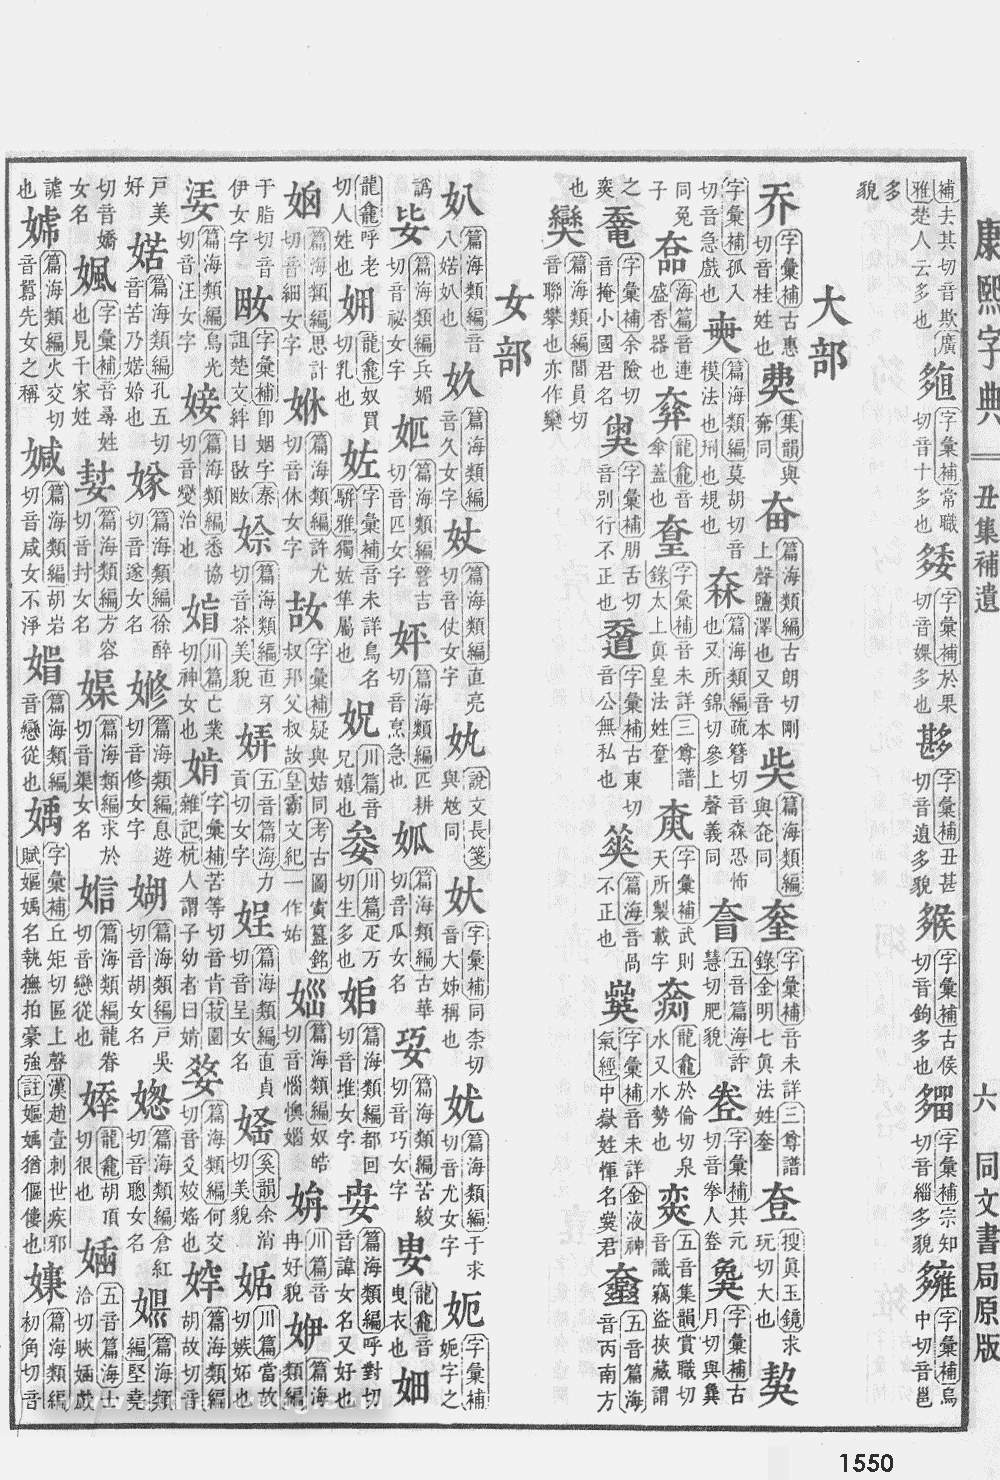 康熙字典掃描版第1550頁